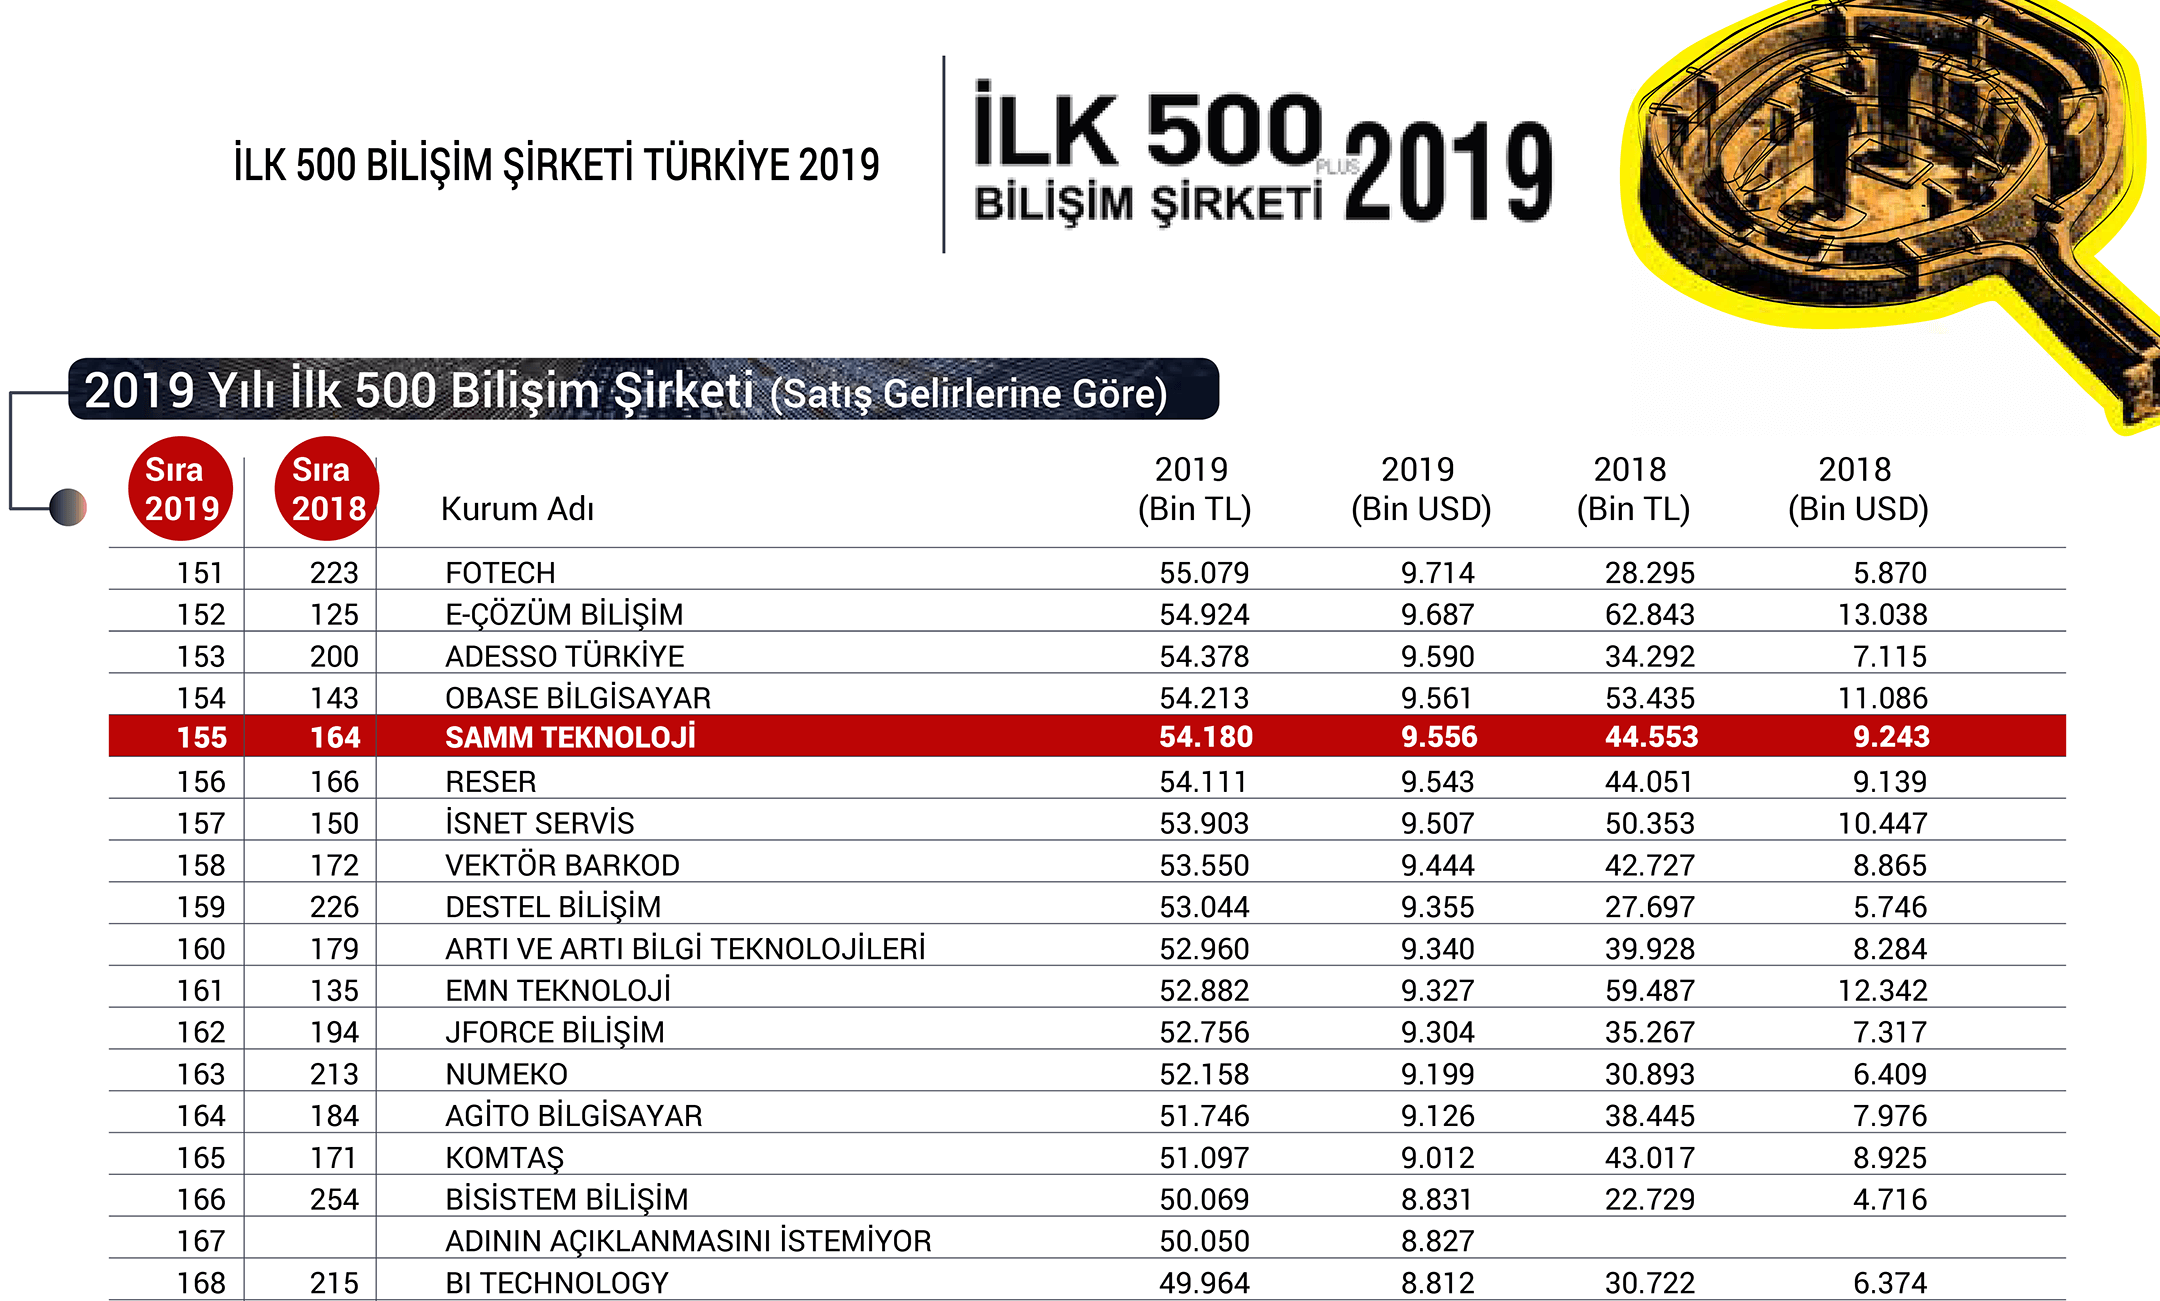 SAMM Teknoloji Was Ranked The 155th in The Bilişim 500 2019 List 2